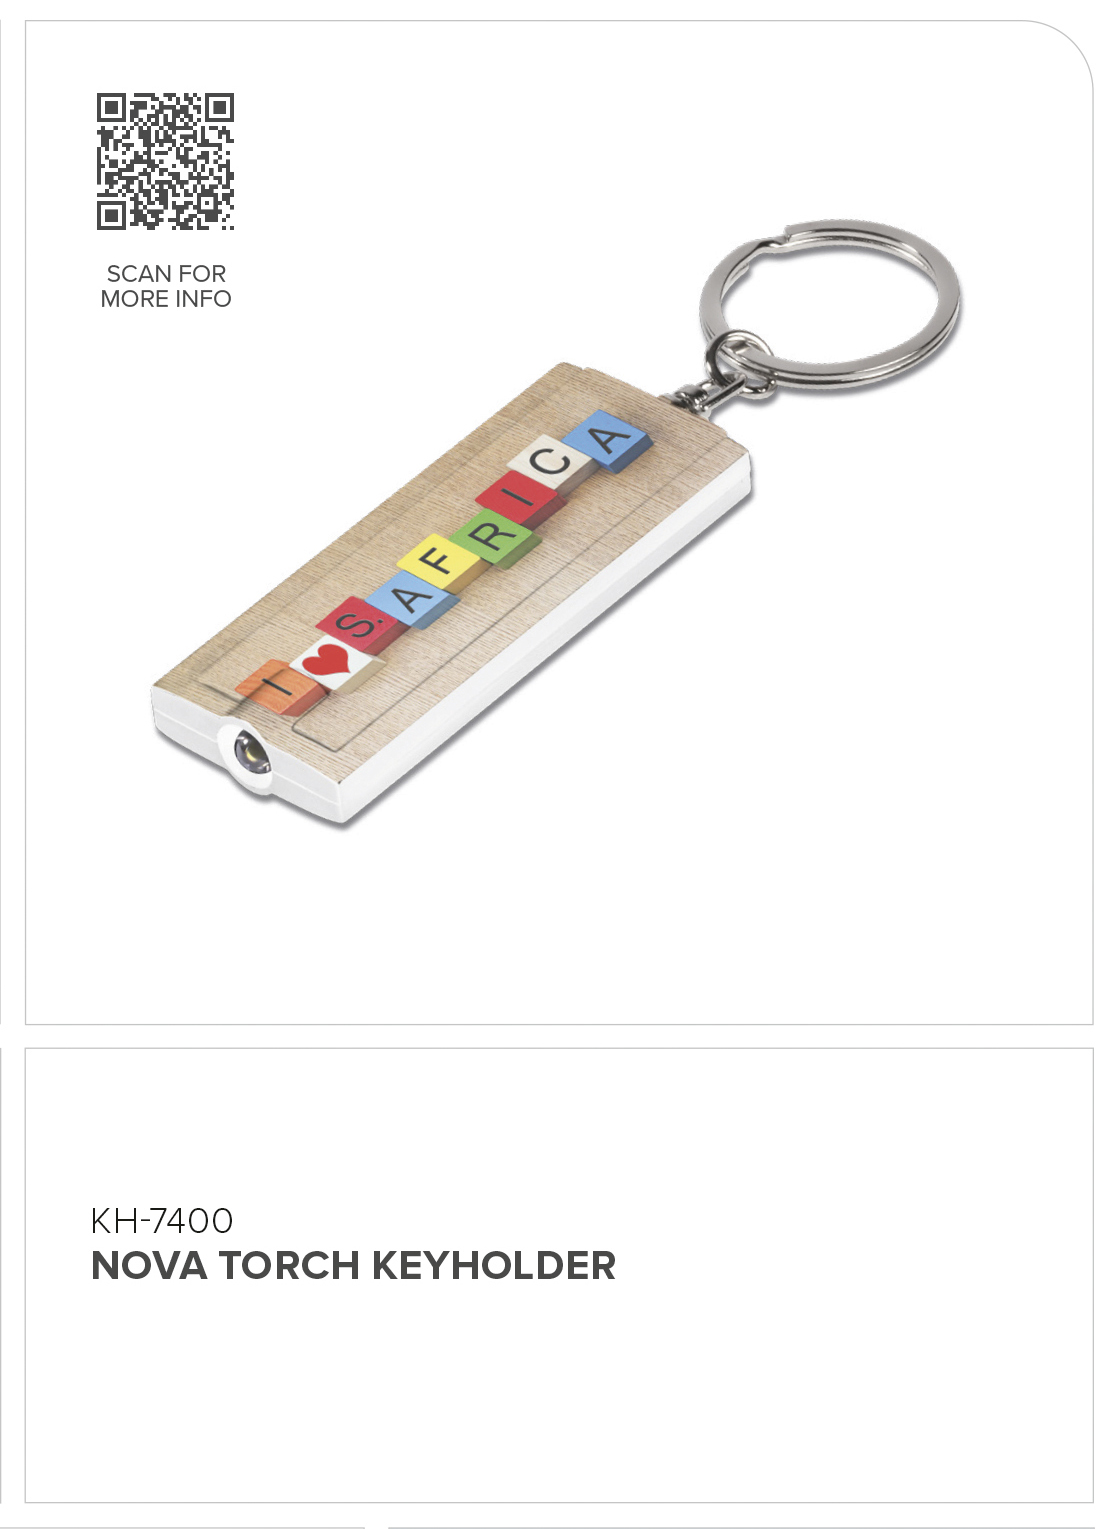 Nova Torch Keyholder